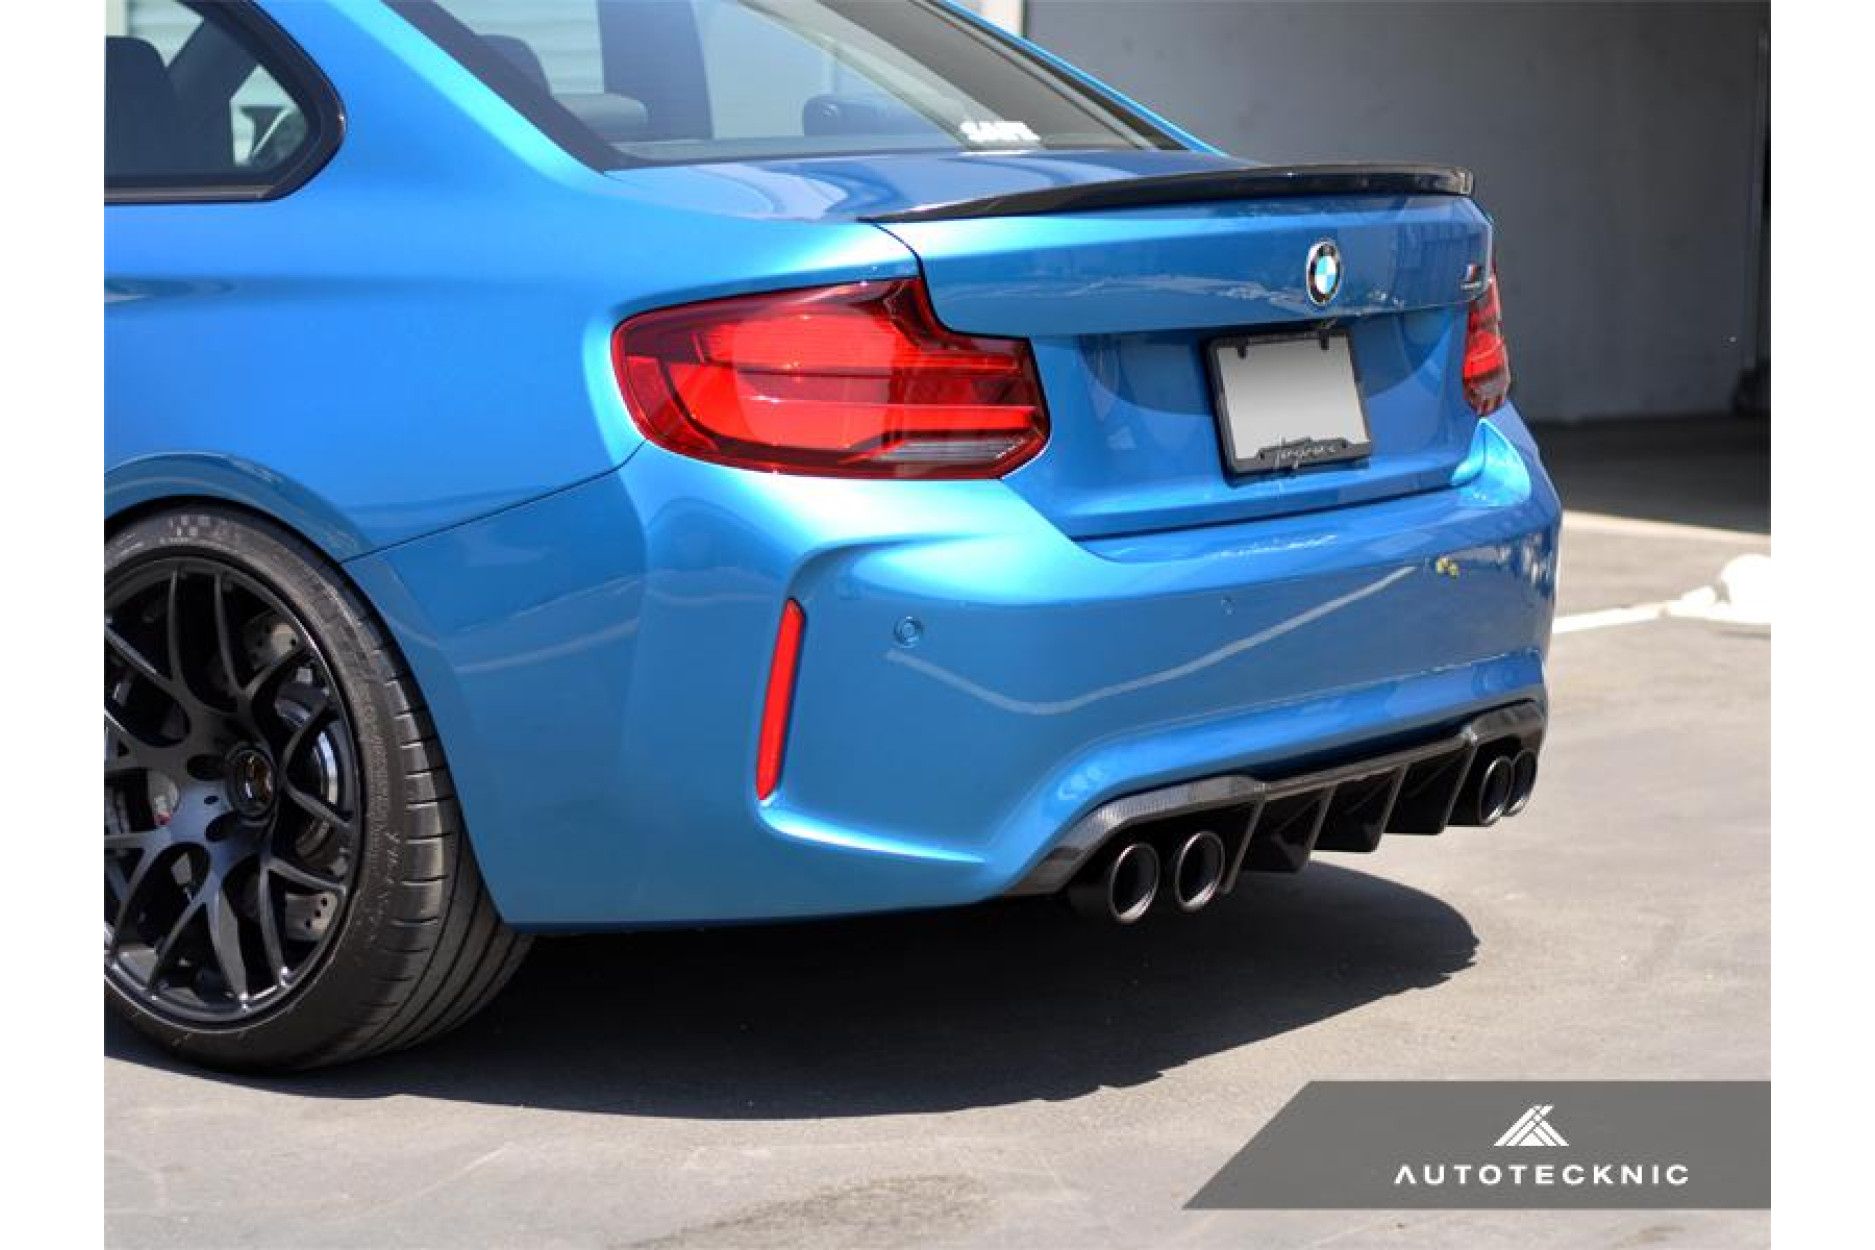 Autotecknic Trockencarbon Diffusor für BMW 2er F87 M2 & M2 Competition -  online kaufen bei CFD